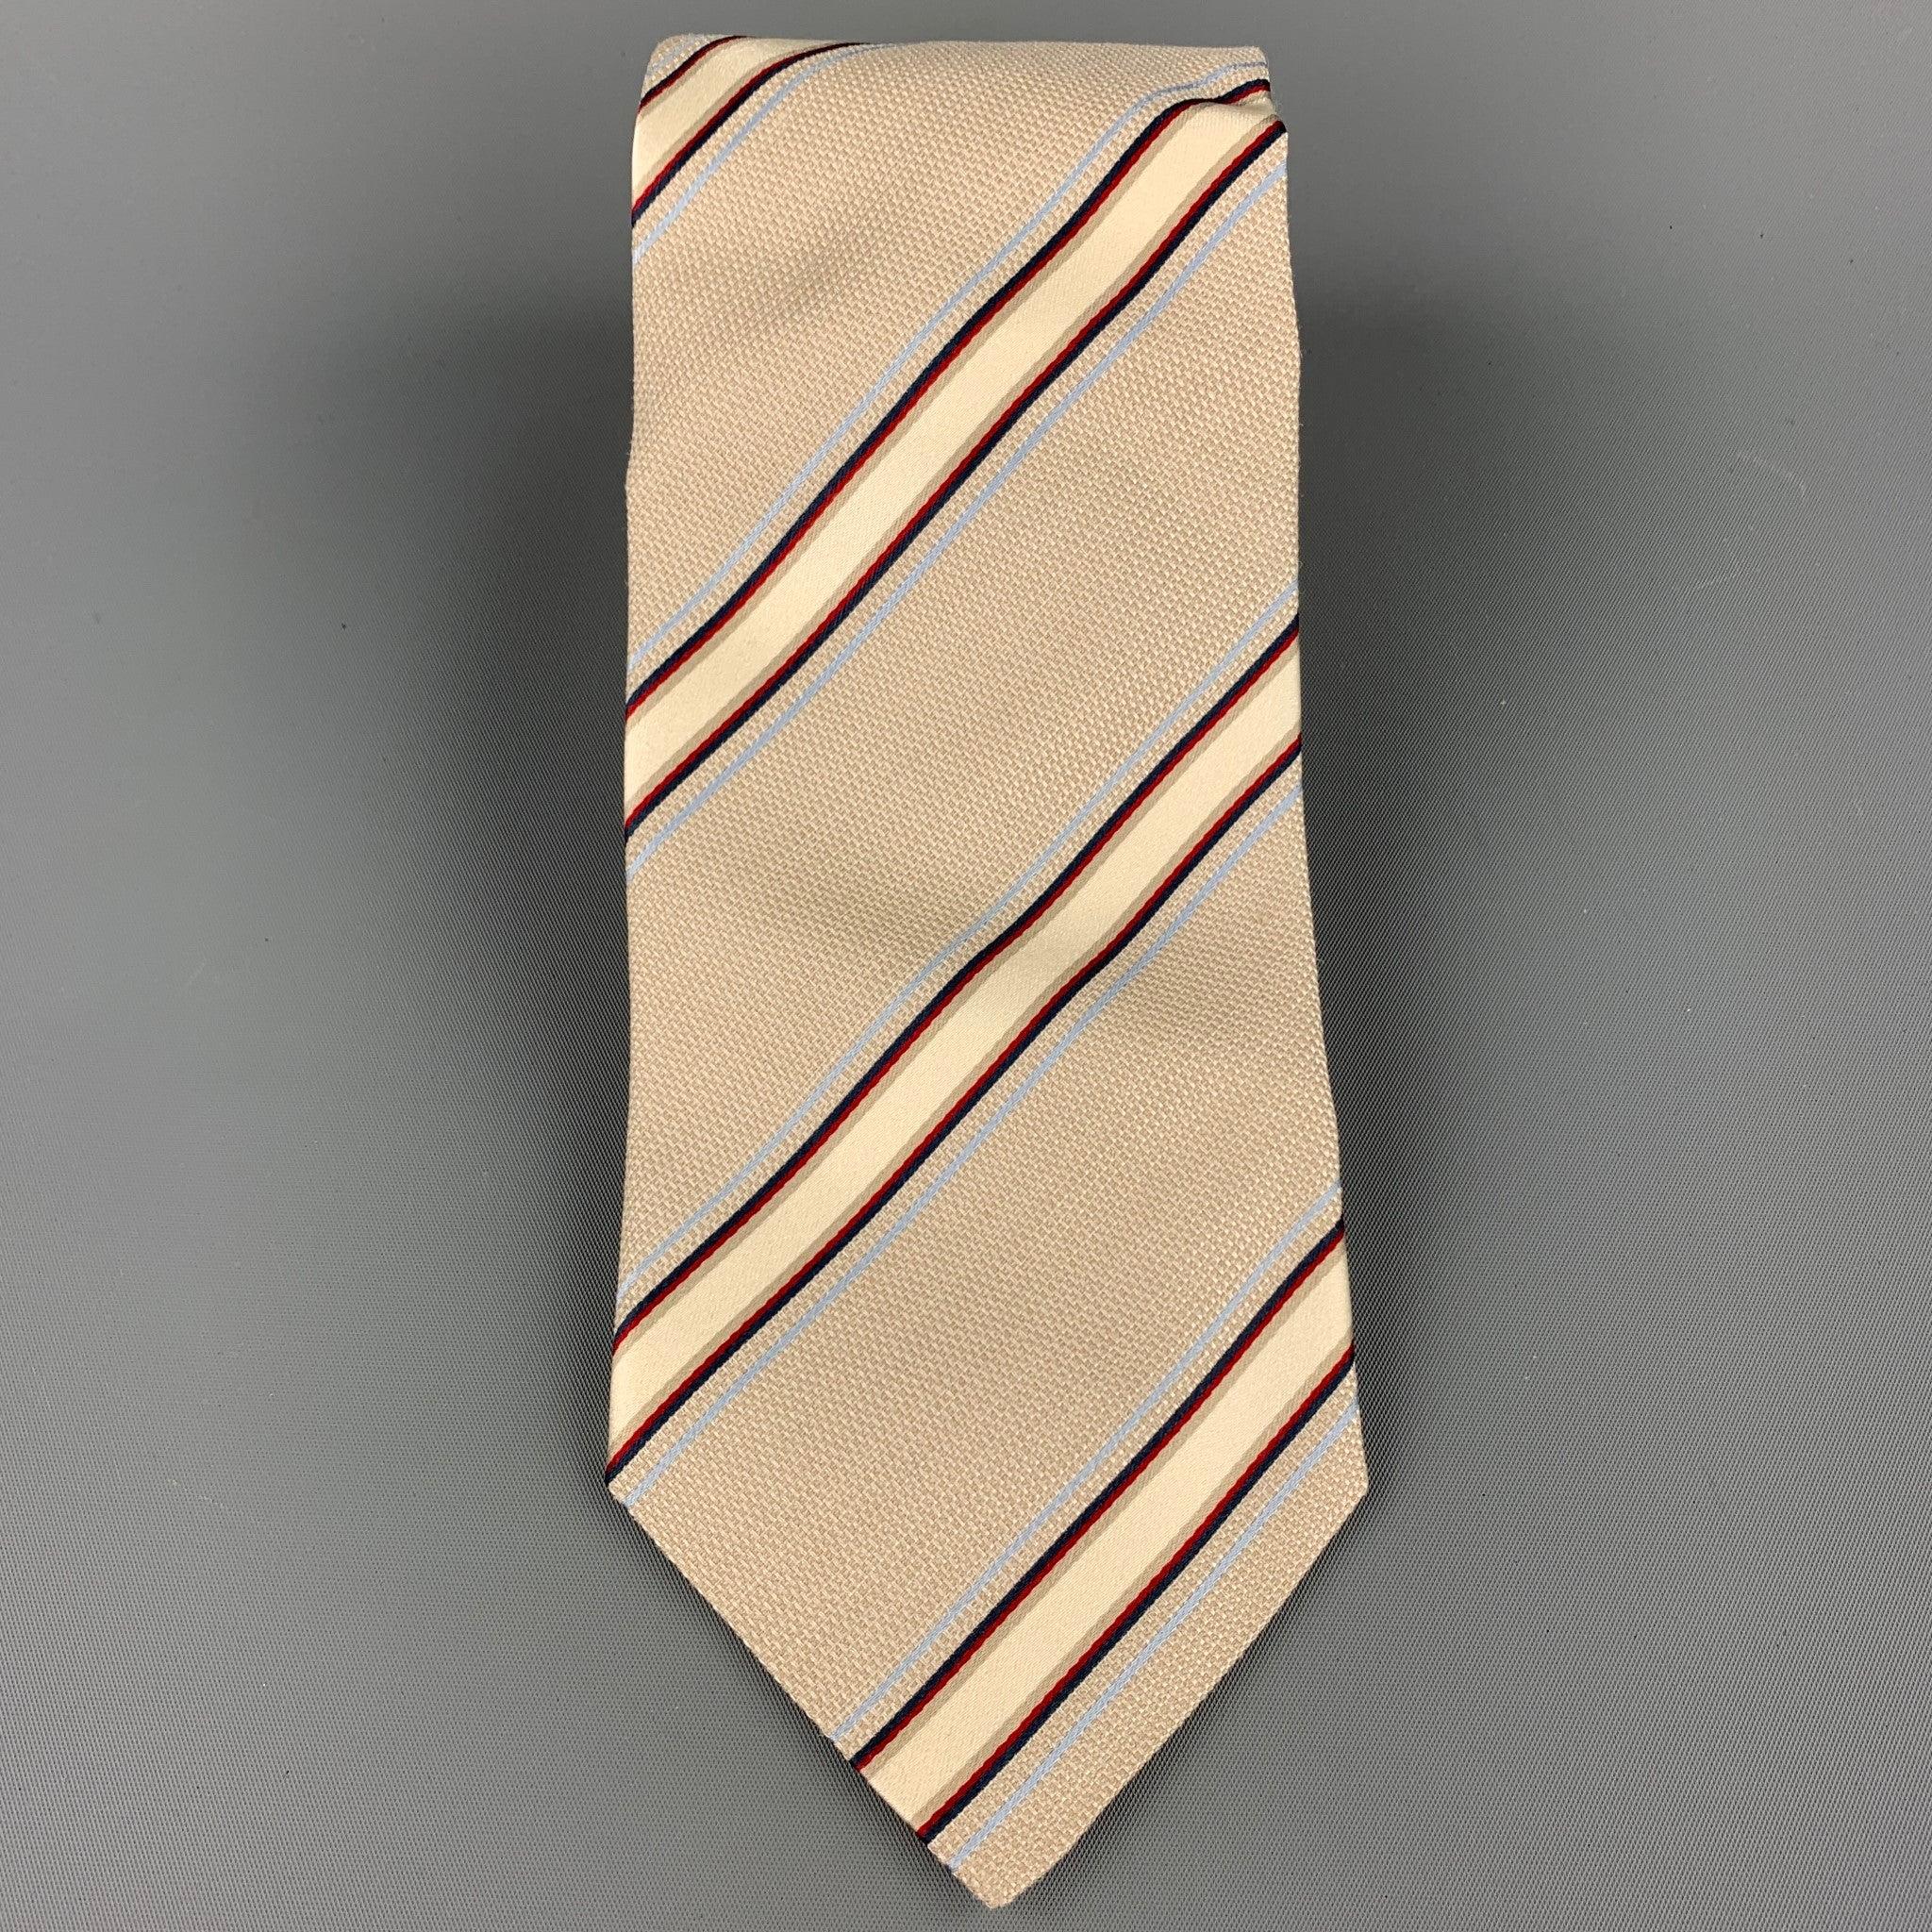 ERMENEGILDO ZEGNA Krawatte aus beige-marinefarbener, diagonal gestreifter Seide. Made in Italy.sehr guter gebrauchter Zustand.Breite: 4 Zoll 
  
  
 
Referenz: 107881
Kategorie: Krawatte
Mehr Details
    
Marke:  ERMENEGILDO ZEGNA
Farbe: 